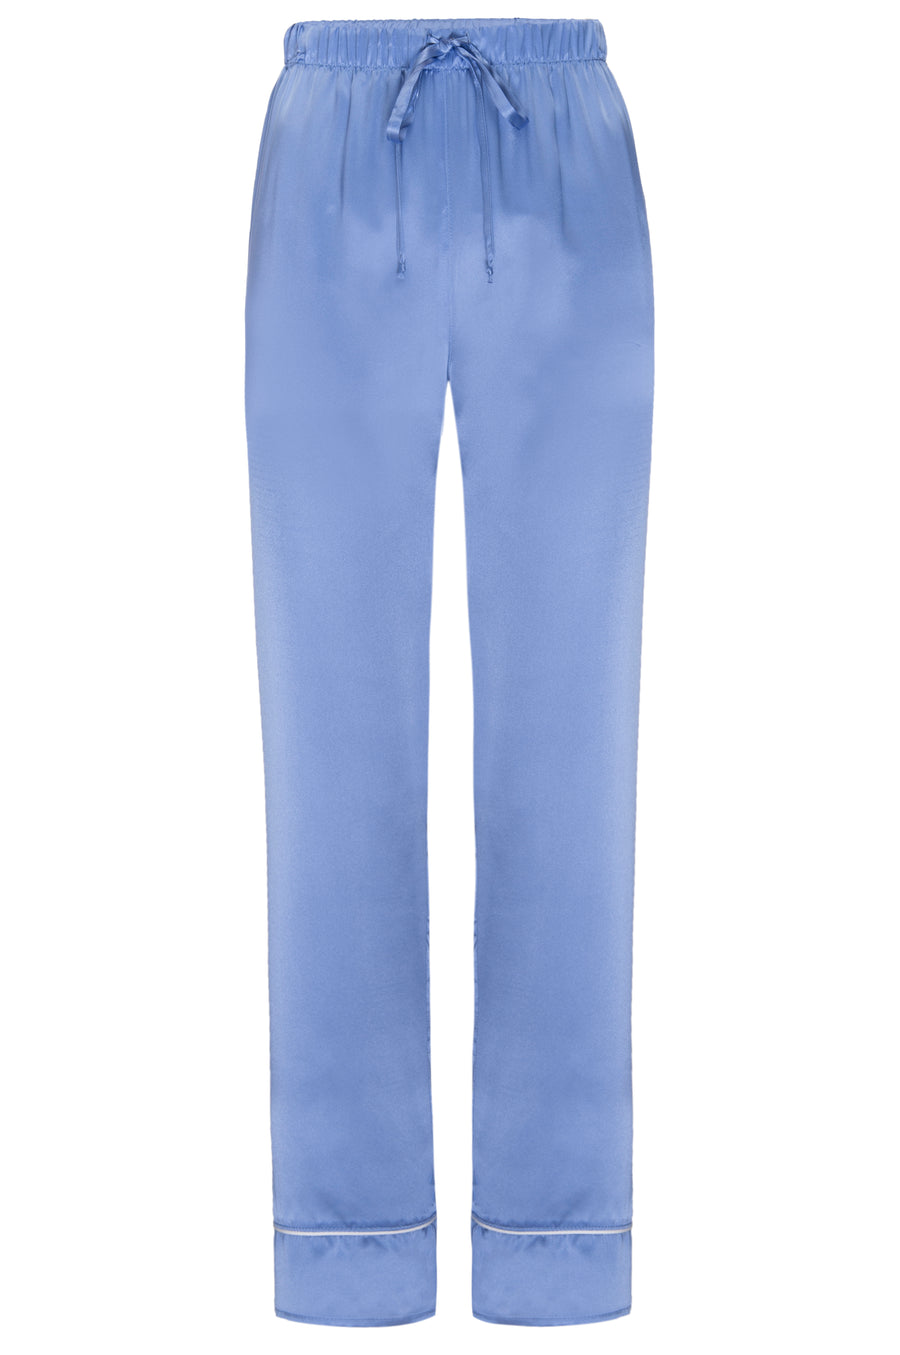 Silk Charmeuse Pants: Sky Blue